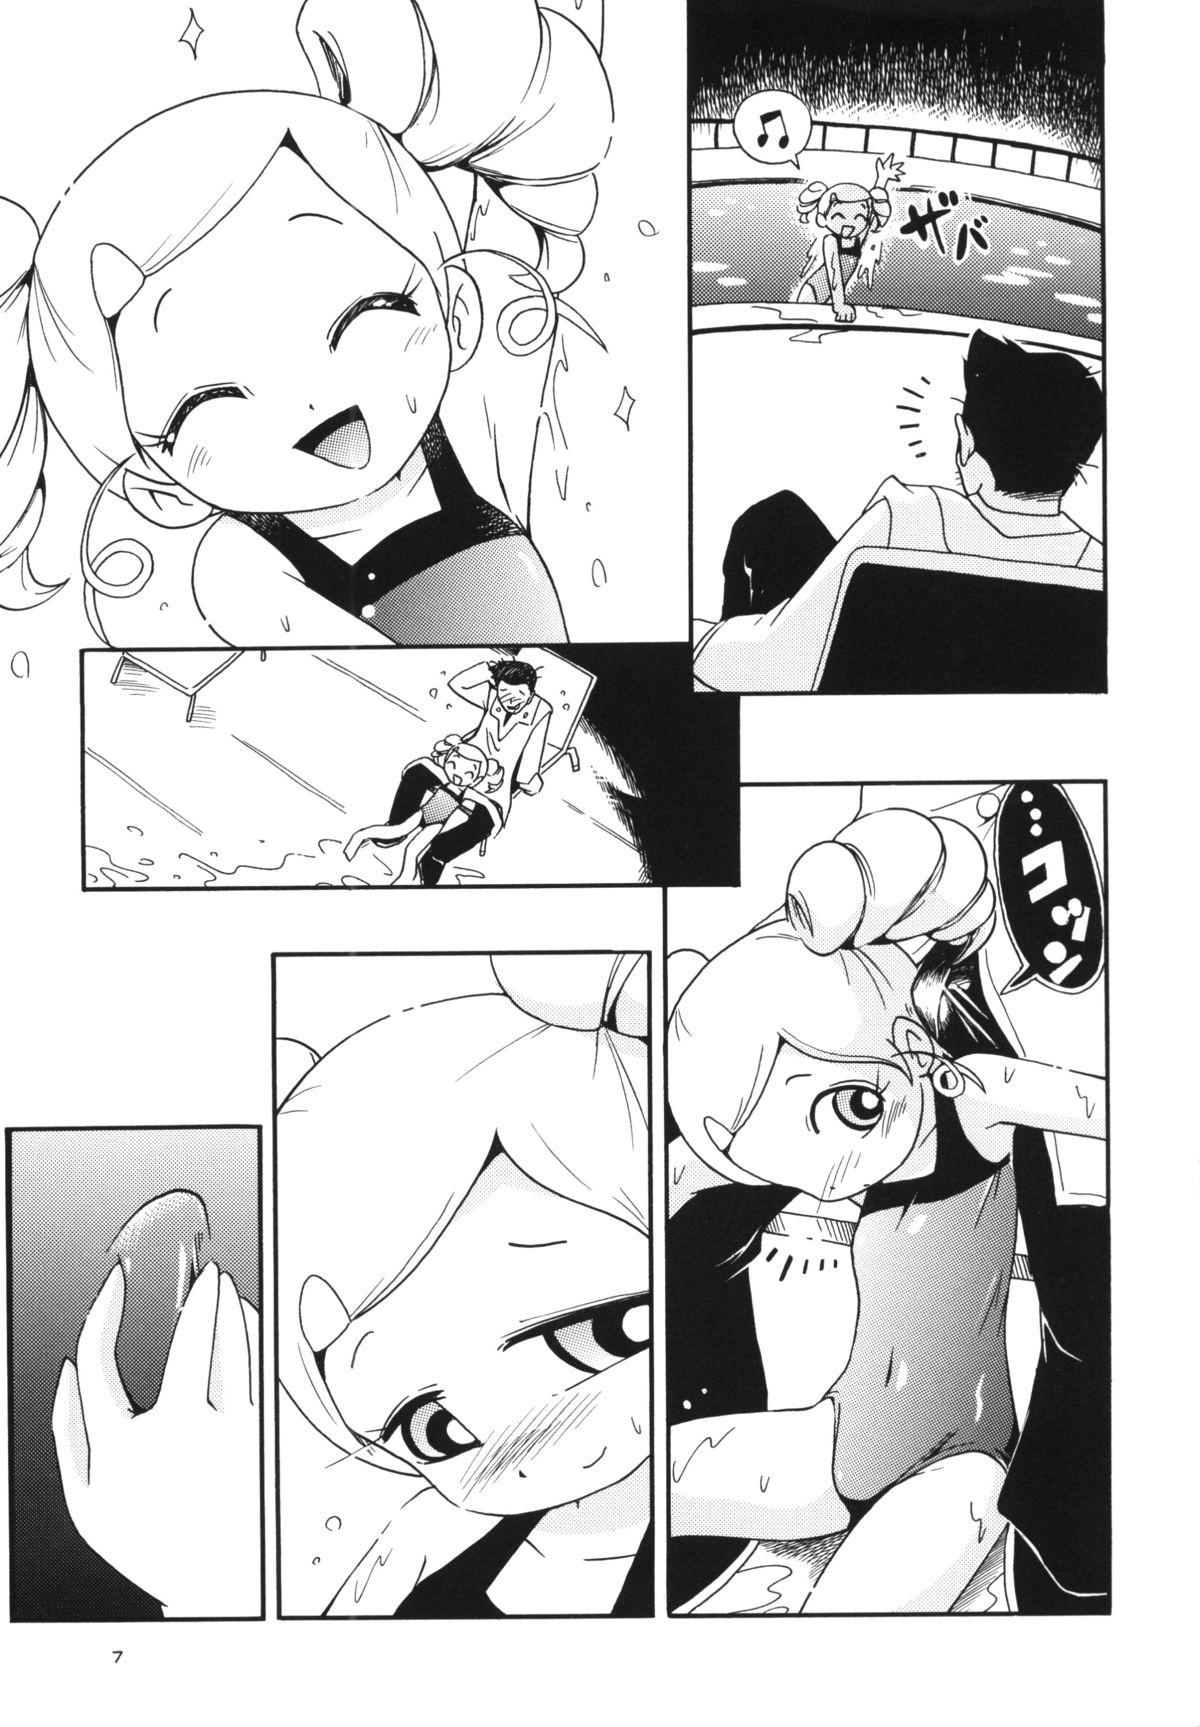 Twinkstudios Demashita - Ojamajo doremi Powerpuff girls z Booty - Page 6